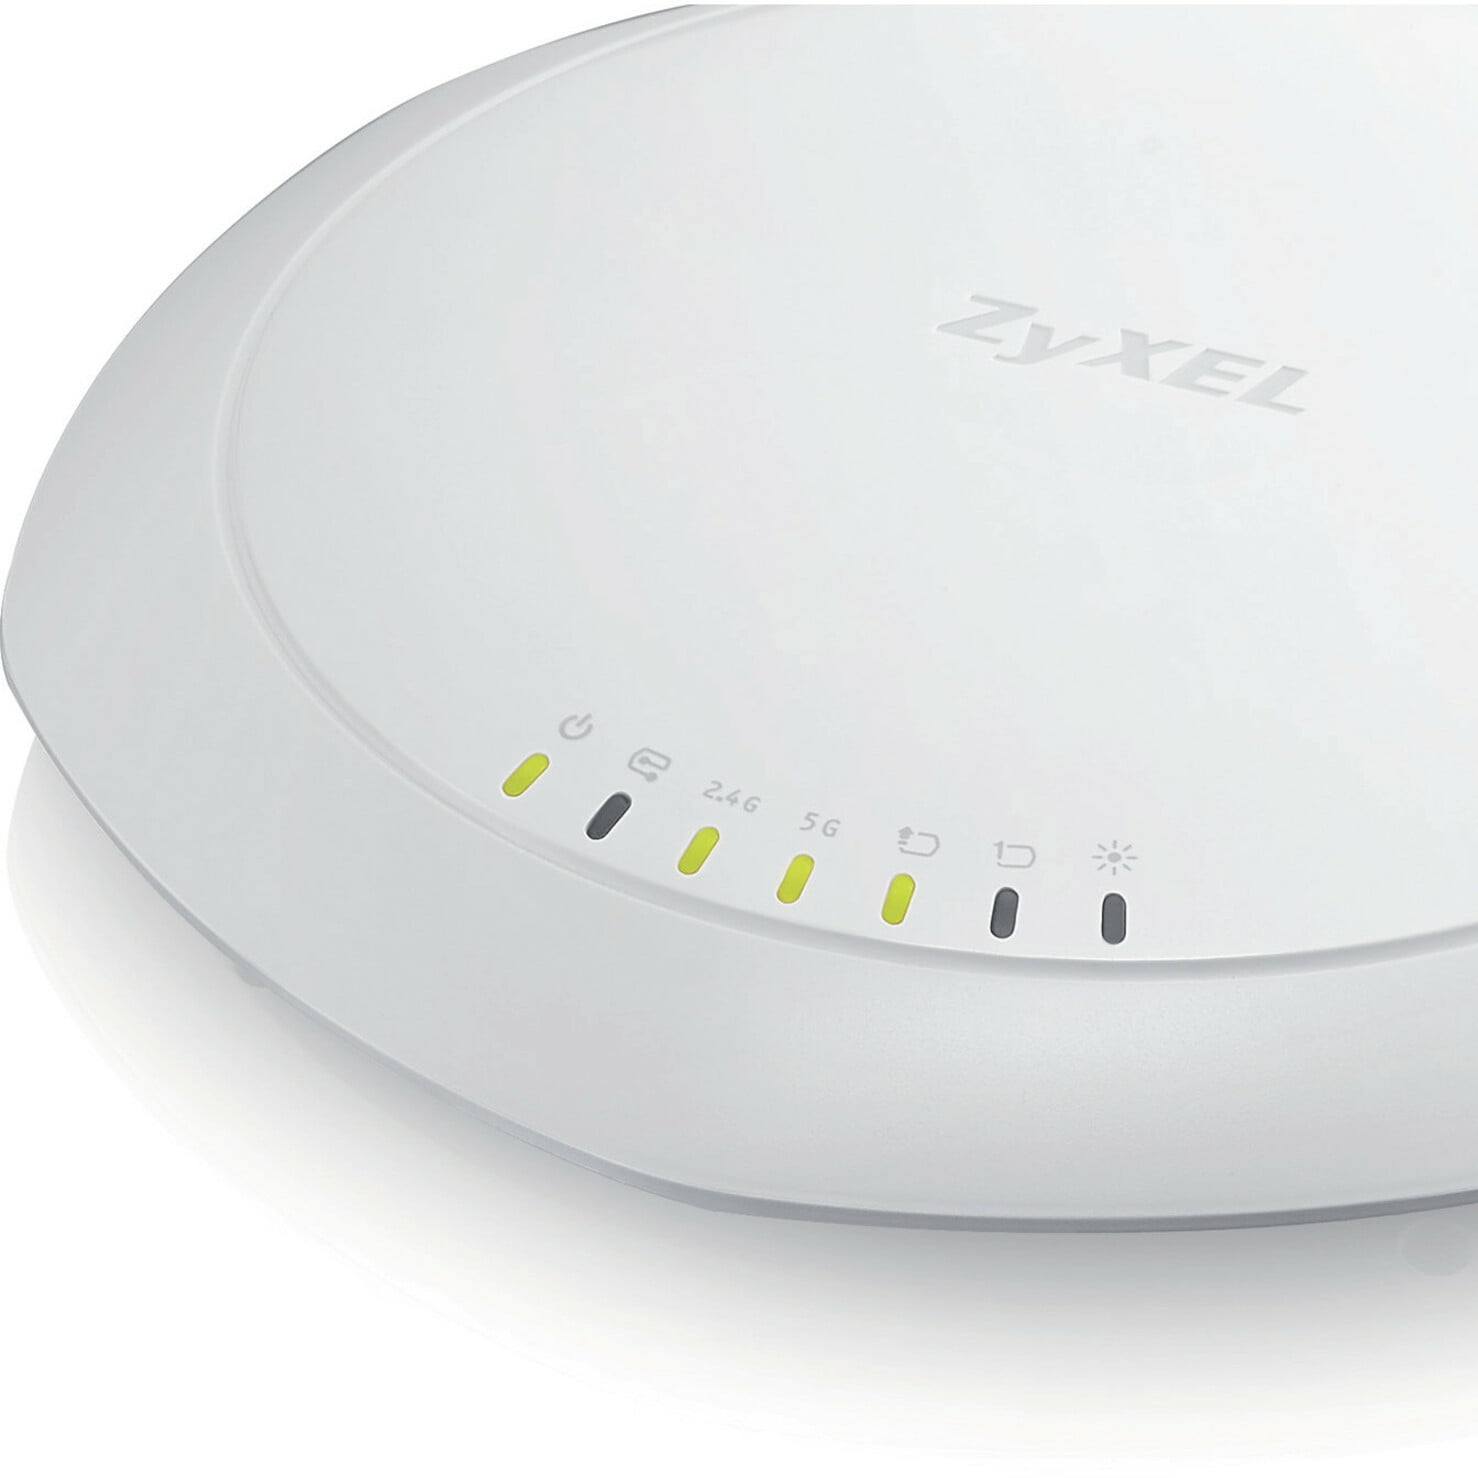 ZYXEL PRO IEEE 802.11ac 1.71 Wireless Access Point